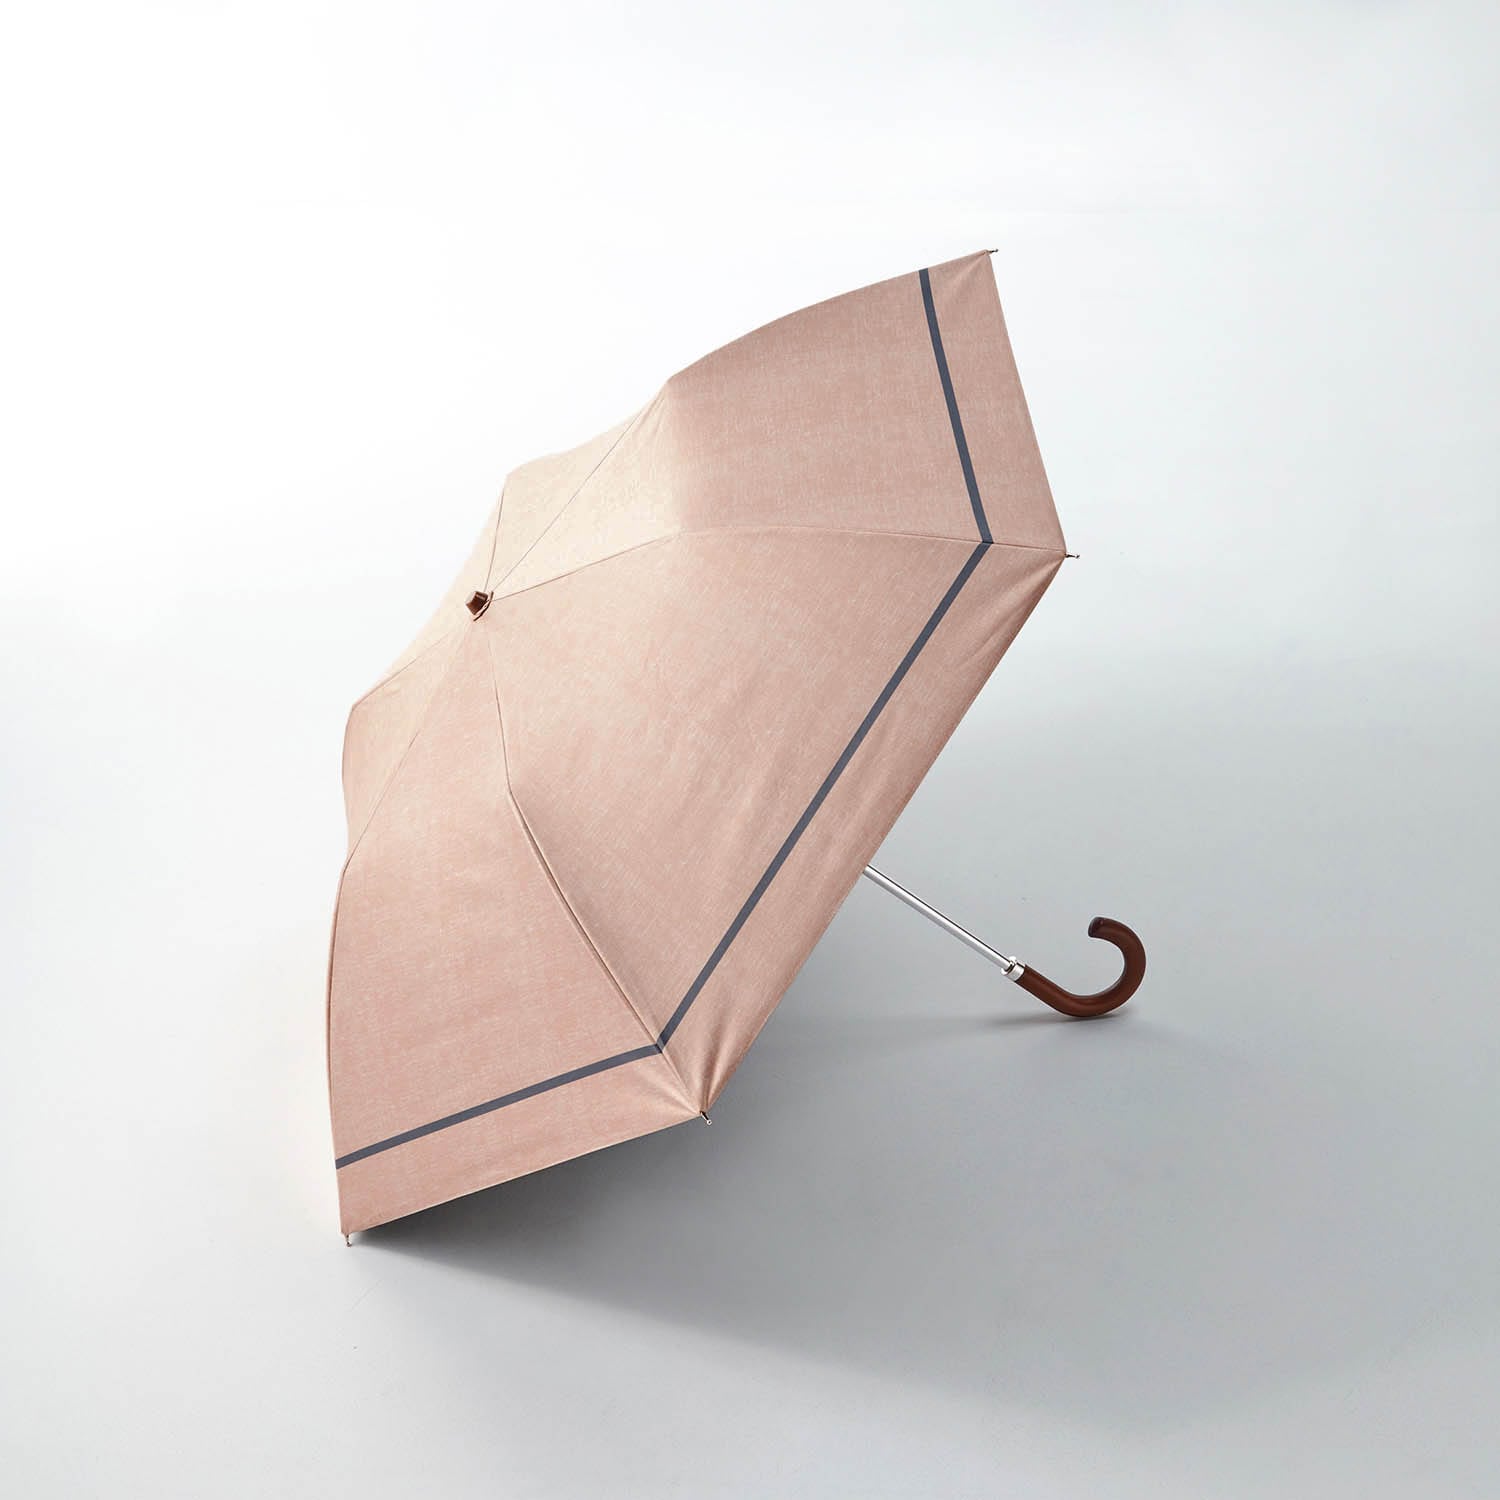 ベルメゾン １級遮光素材の晴雨兼用折りたたみ傘 【夏の超最強】 ベージュ